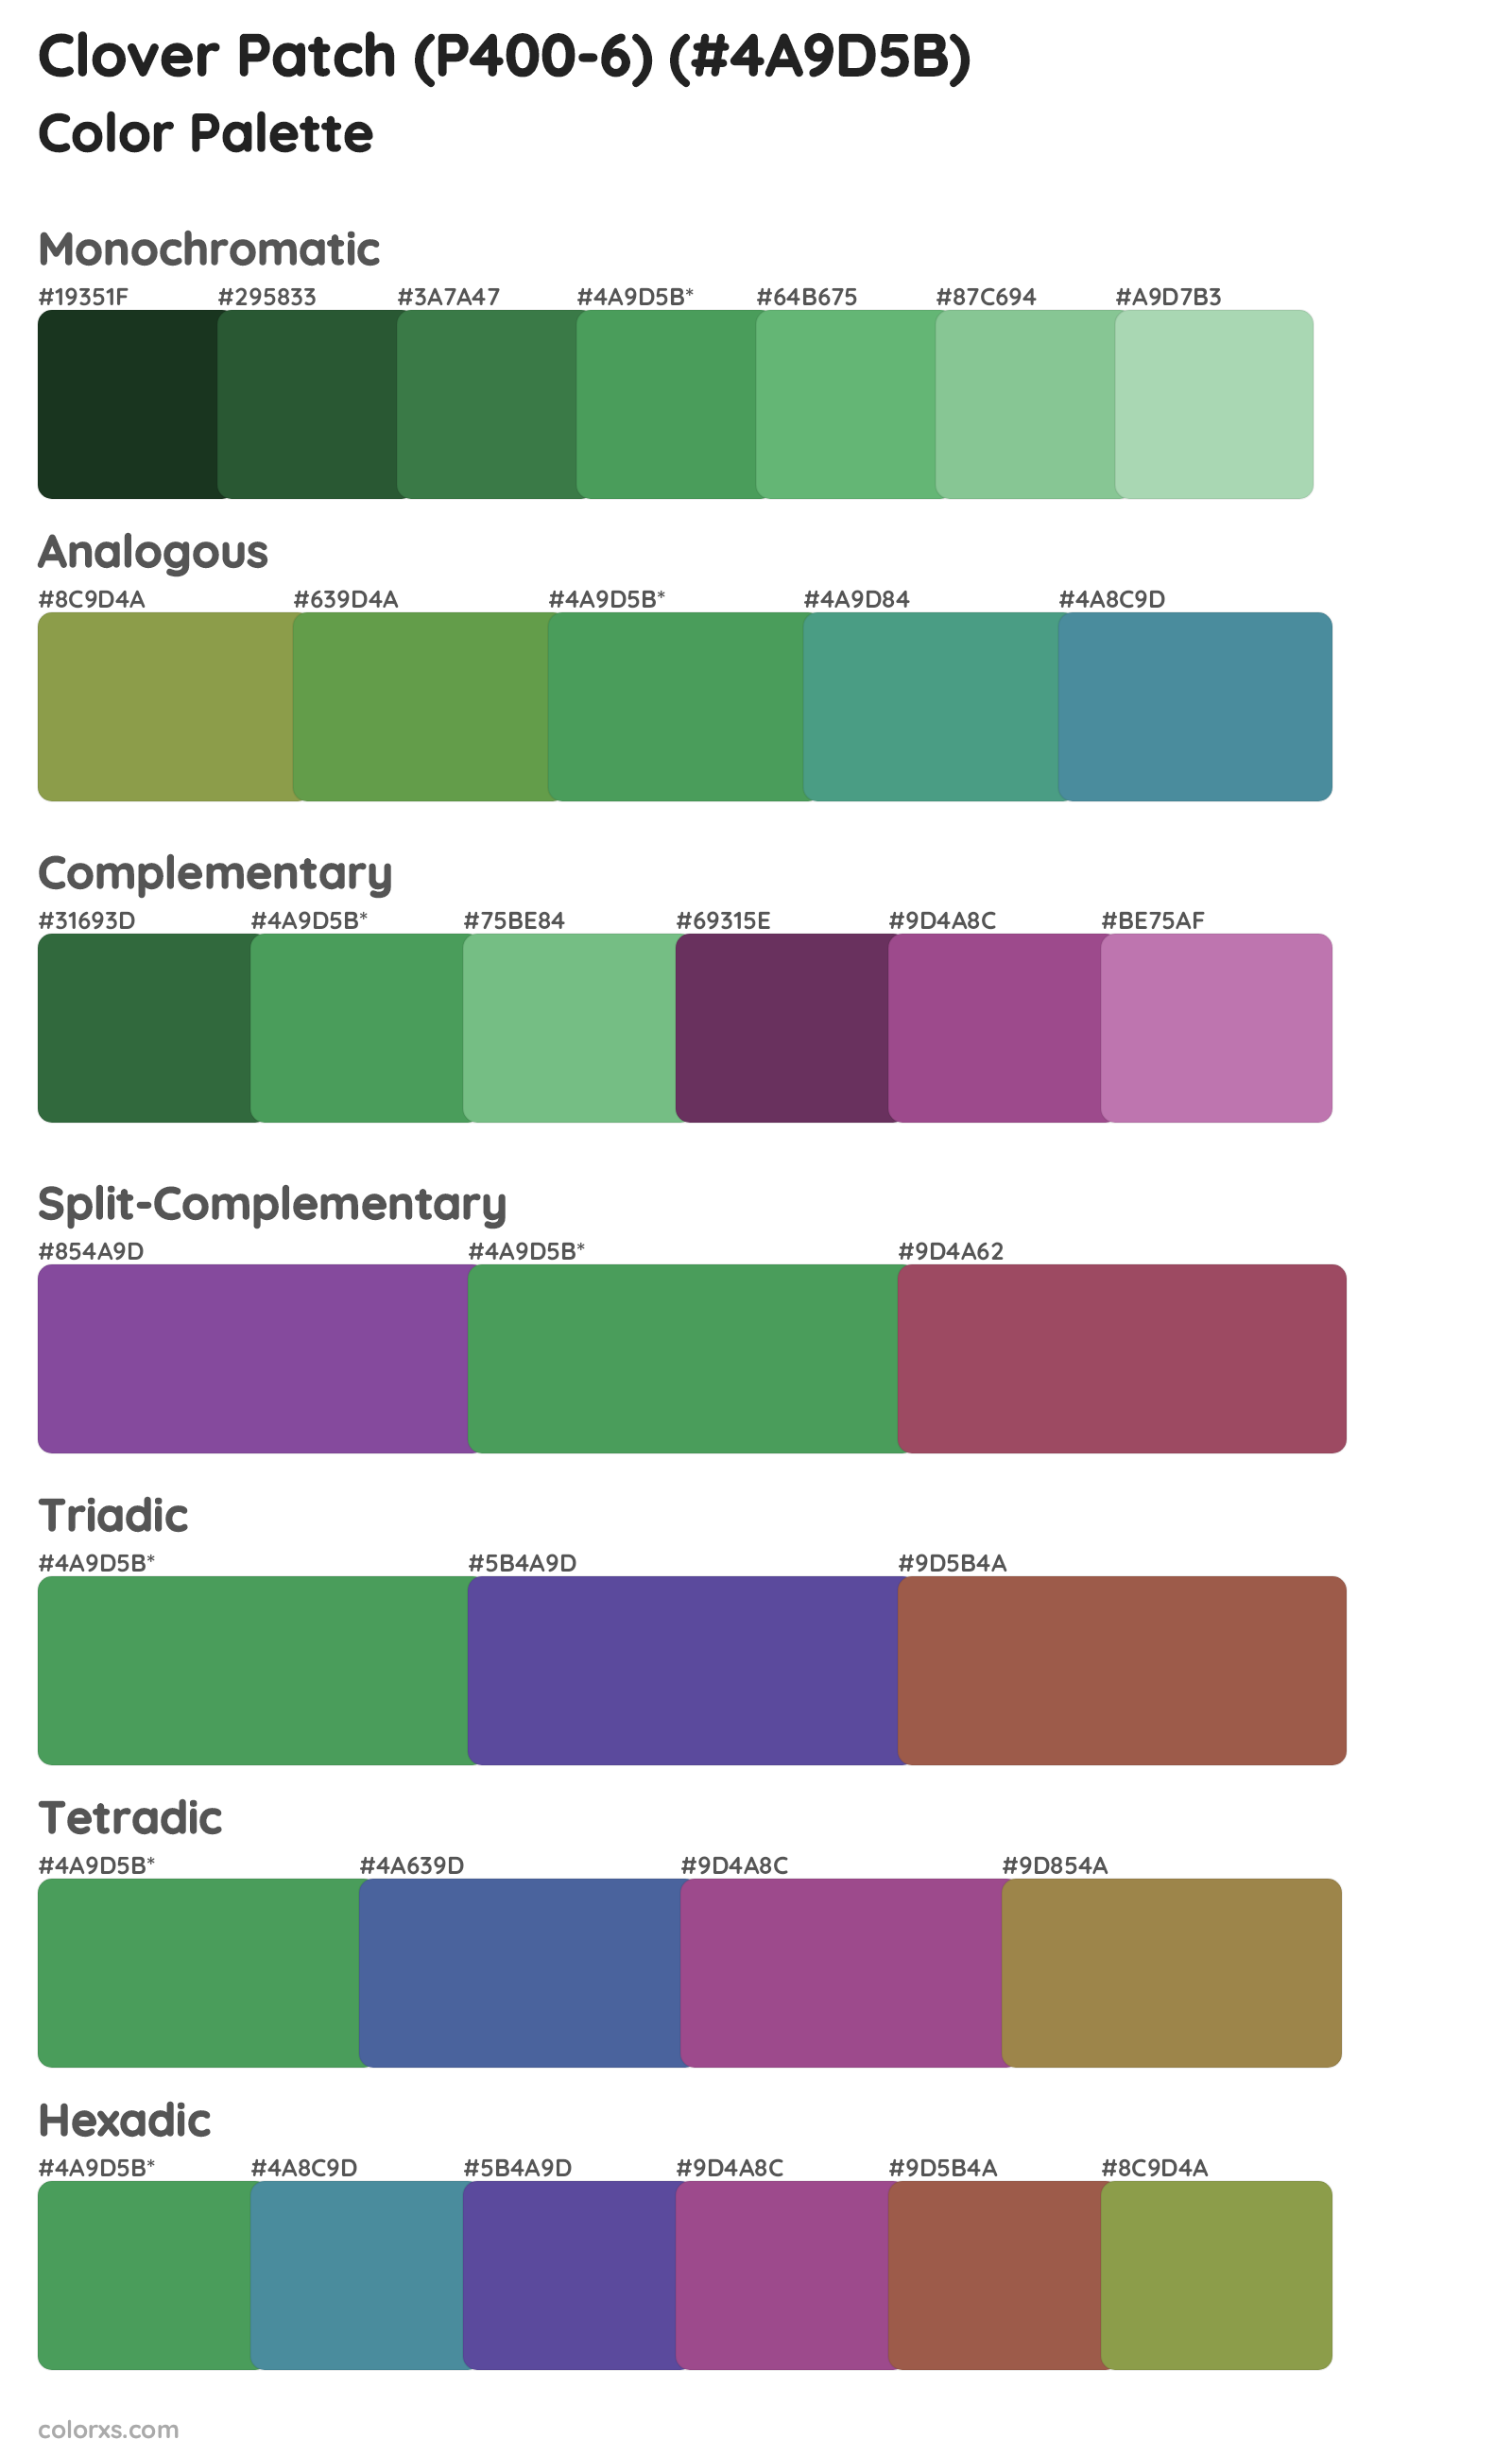 Clover Patch (P400-6) Color Scheme Palettes